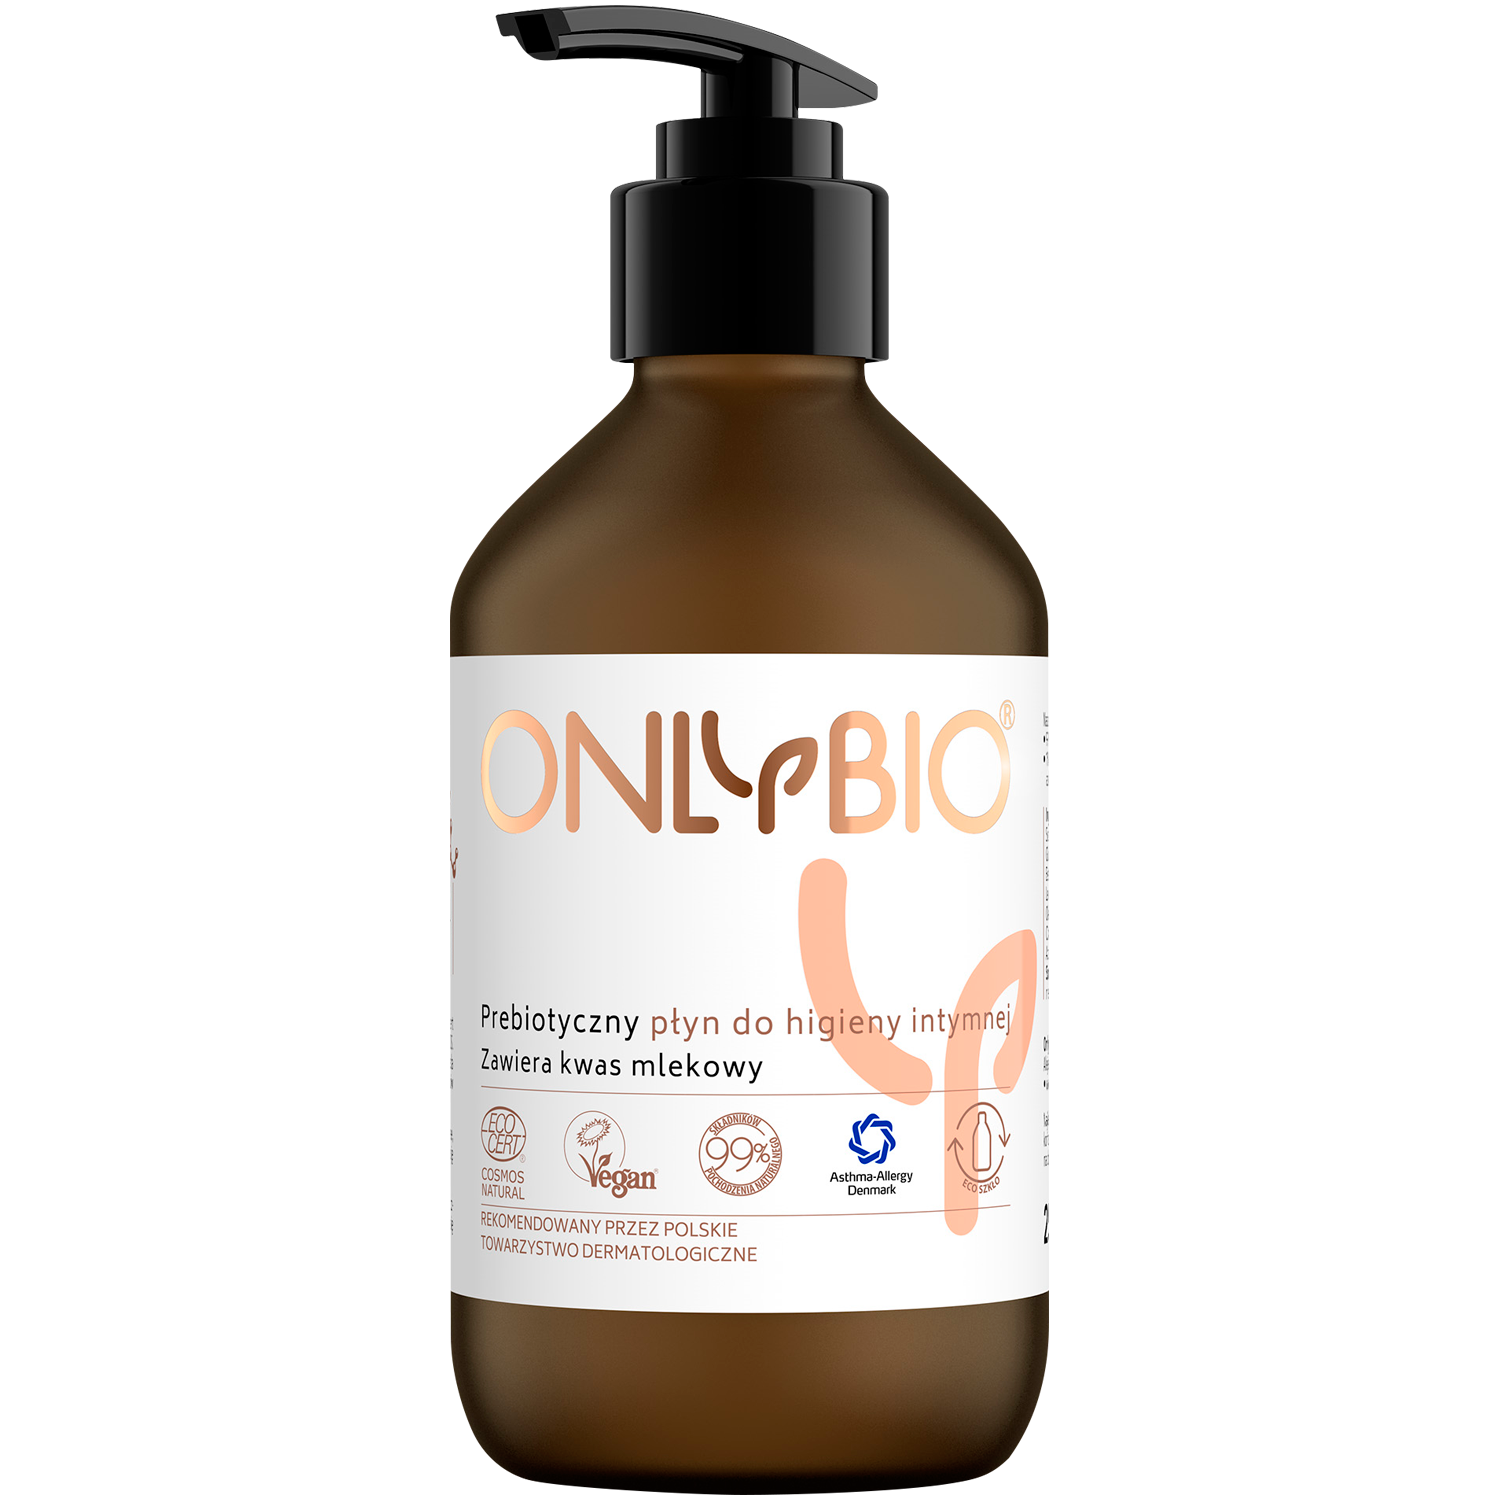 Only Bio Intimate prebiotyczny płyn do higieny intymnej, 250 ml | hebe.pl